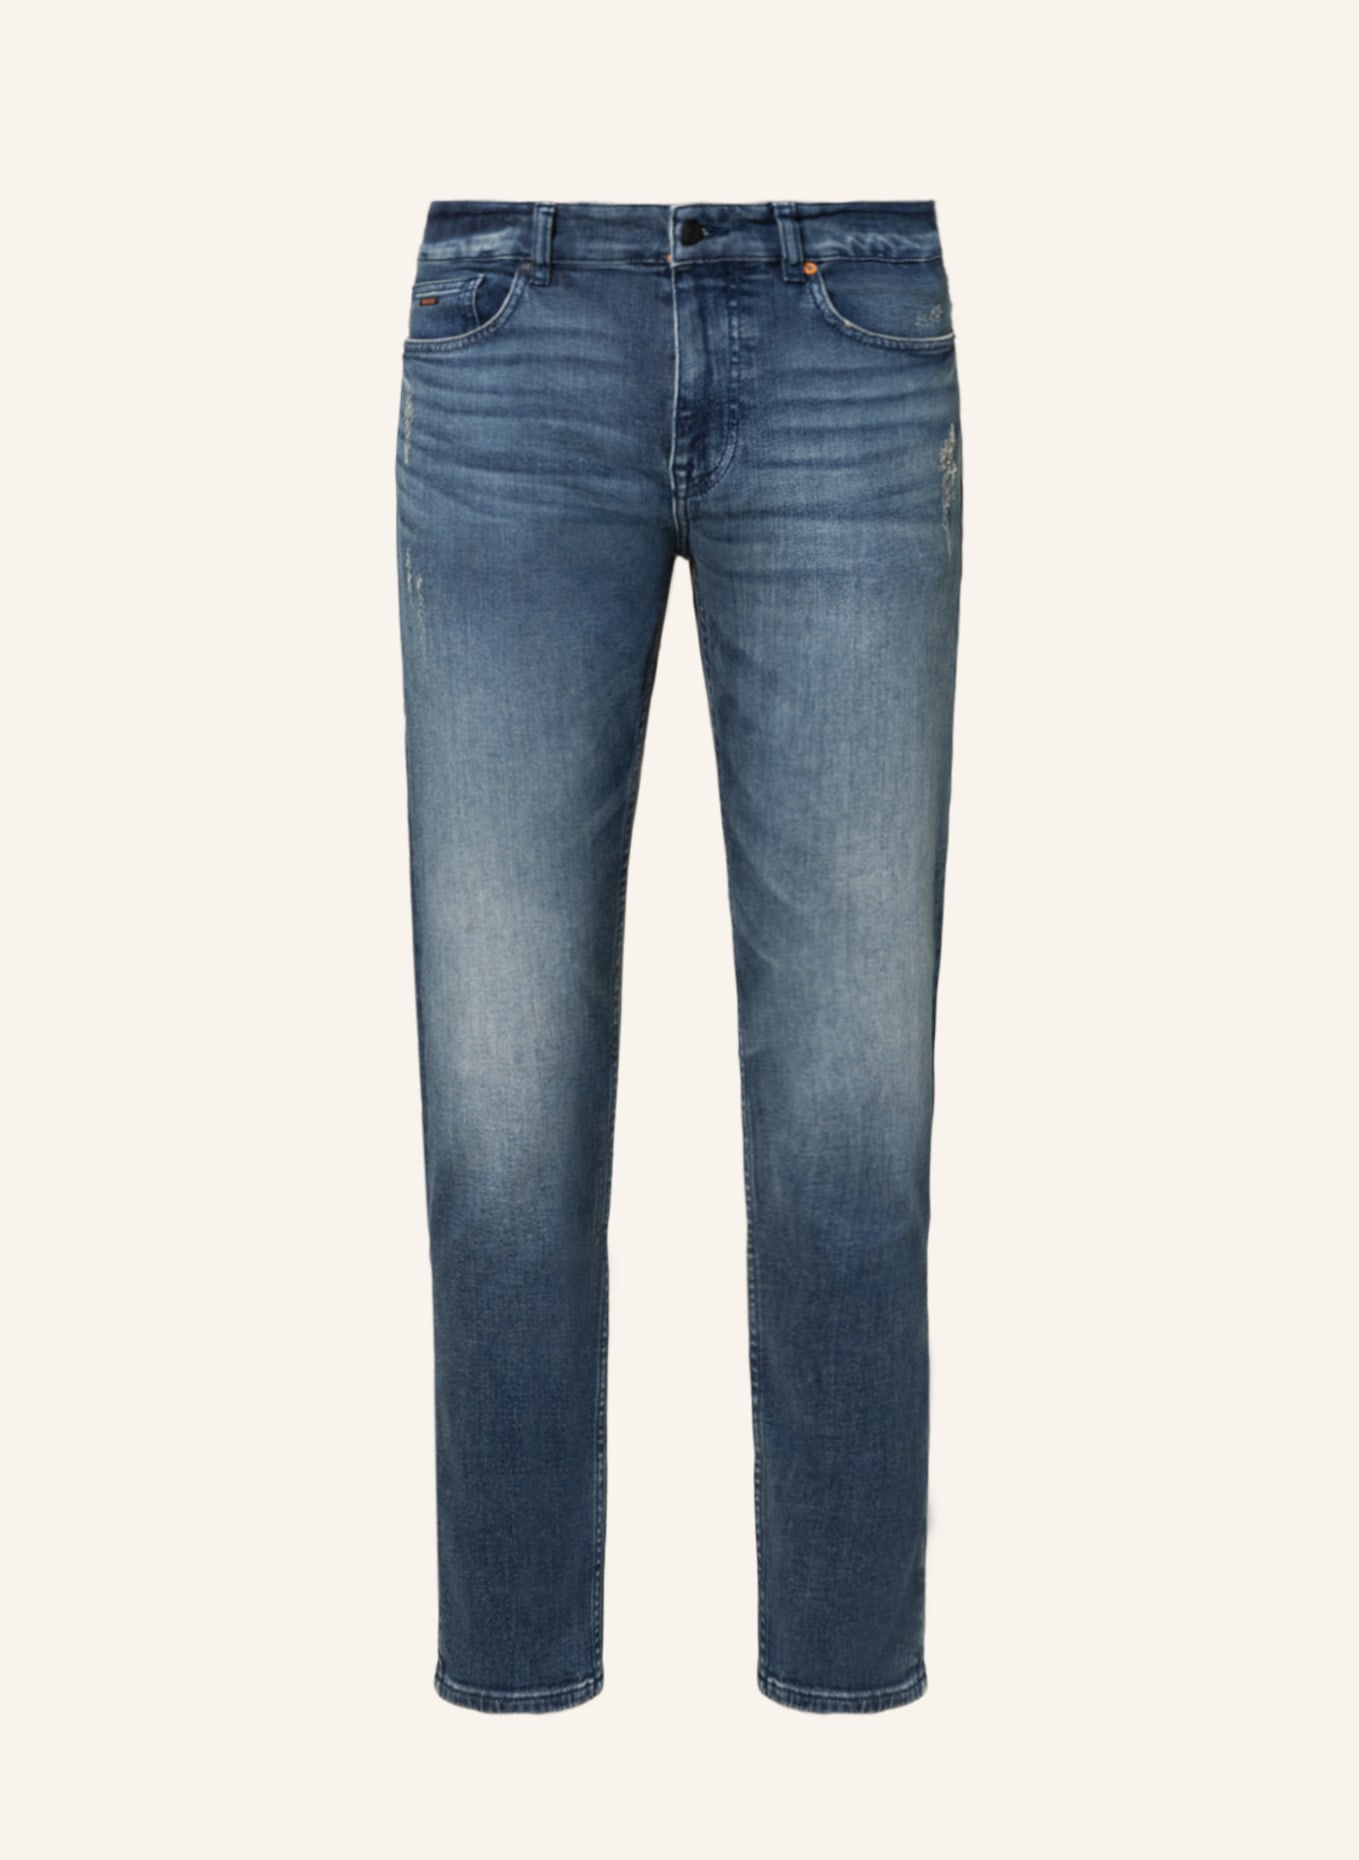 BOSS Jeans DELAWARE Slim Fit, Farbe: 419 NAVY (Bild 1)